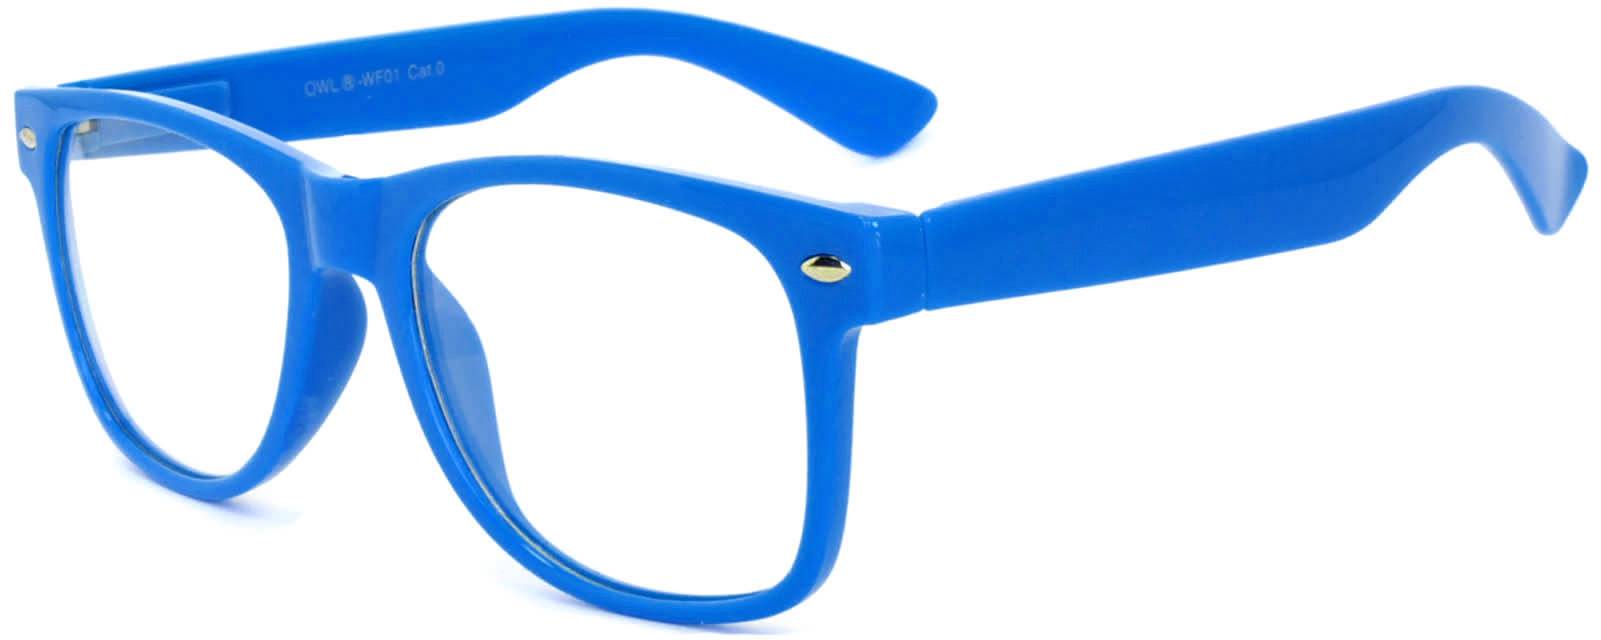 Retro Sunglasses - Blue Frame / Clear Lens